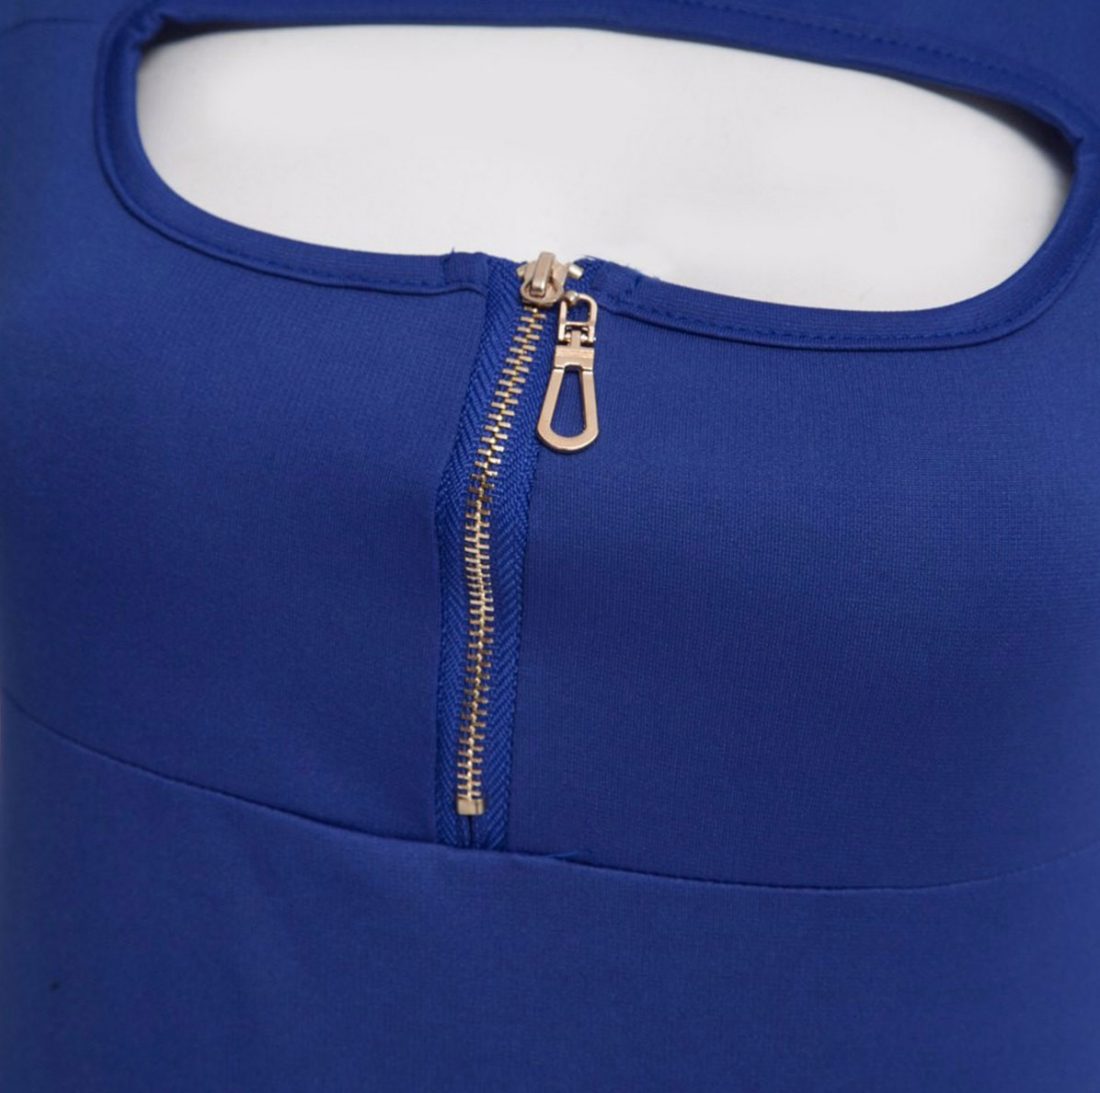 M0176 blue3 Party Dresses maureens.com boutique